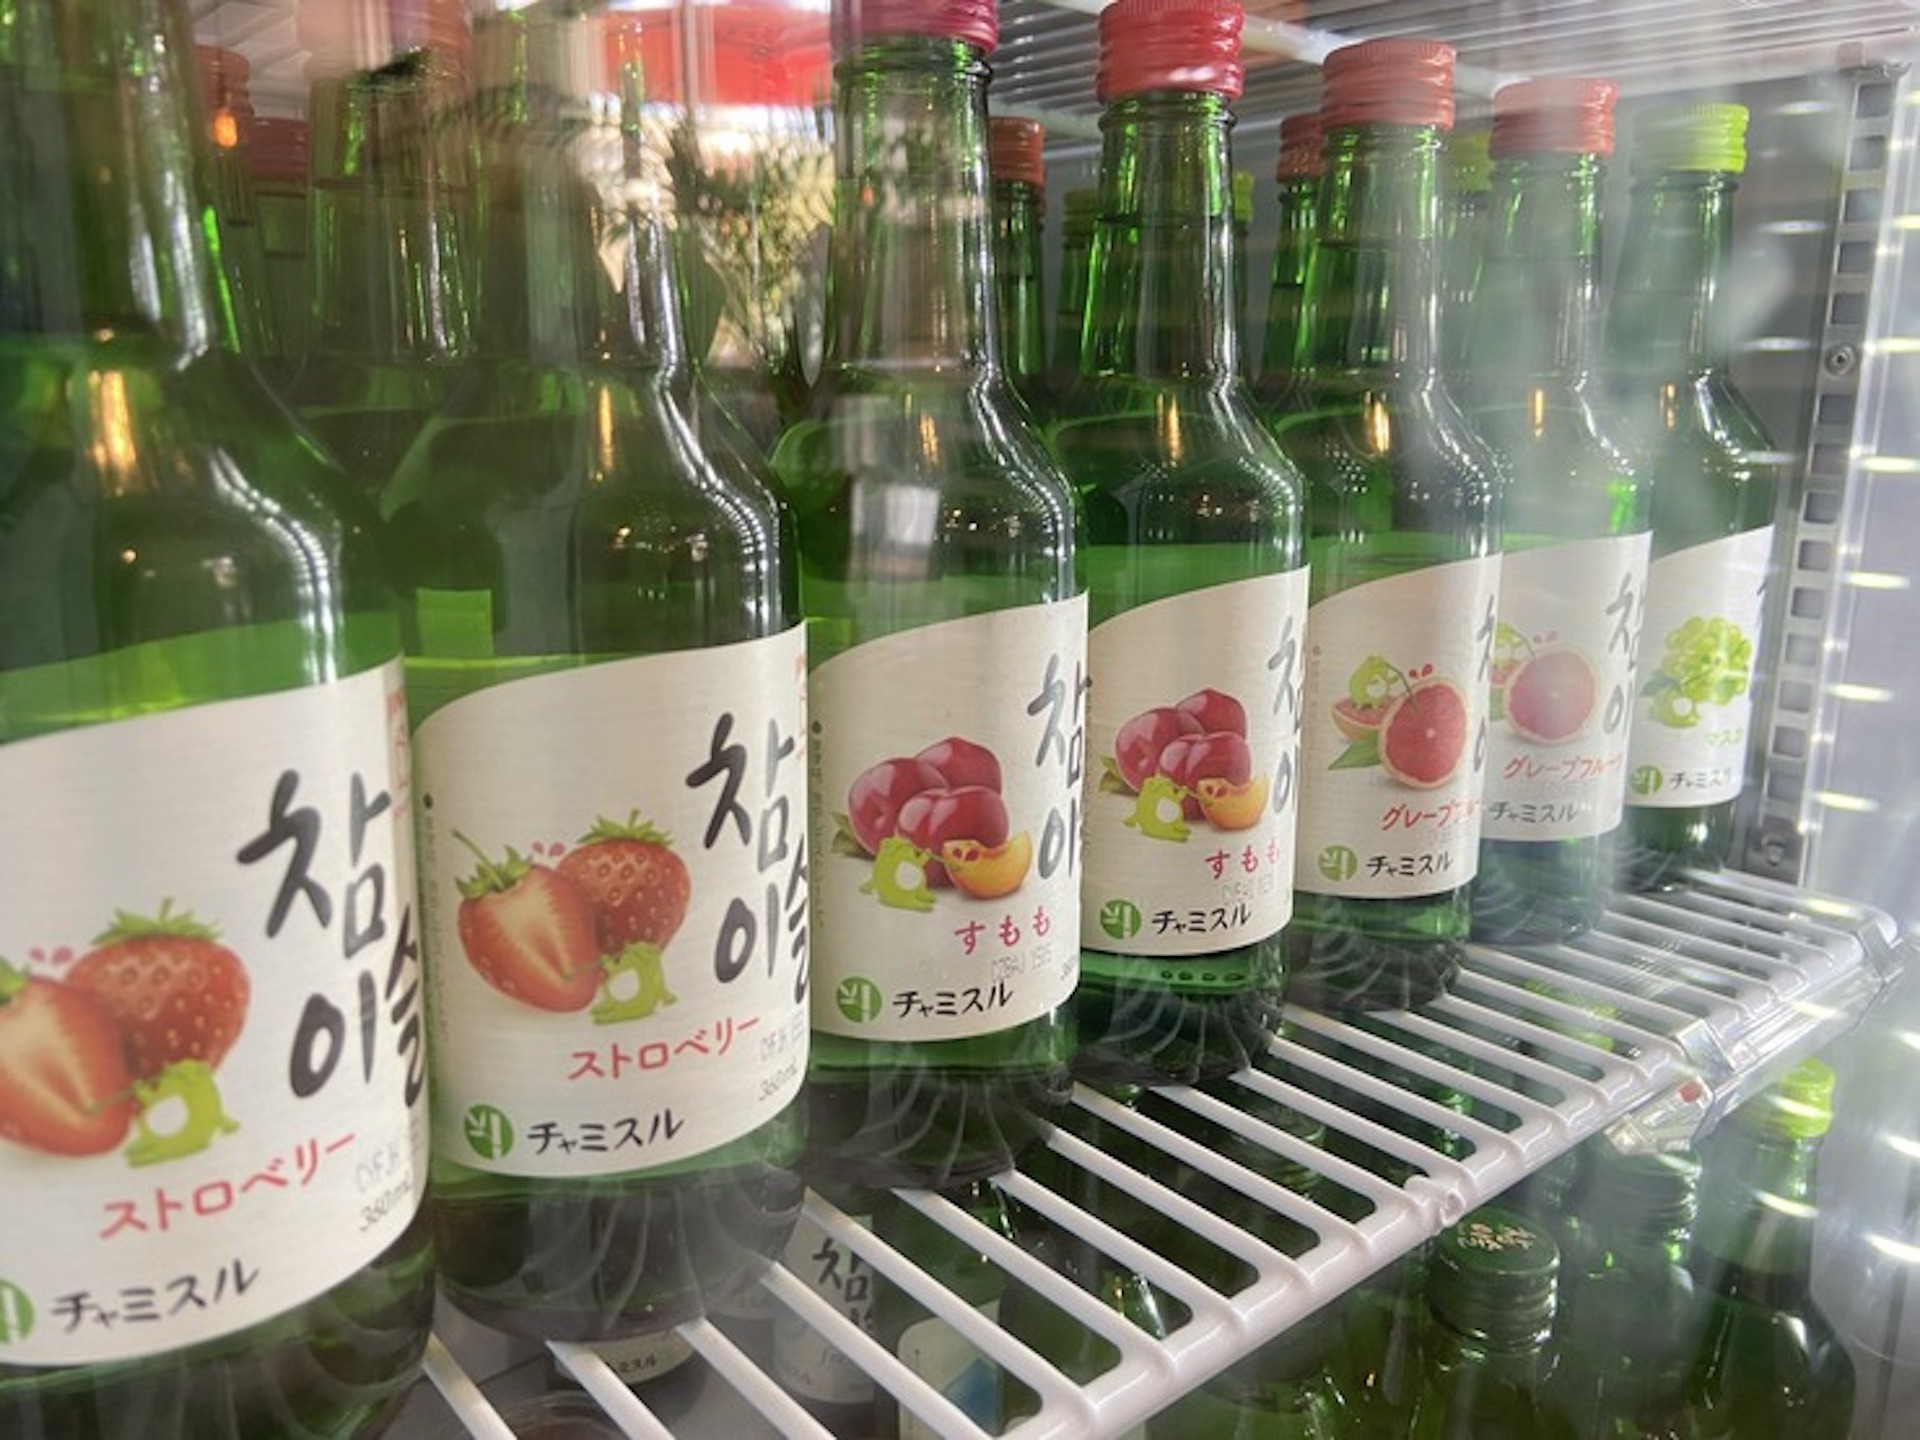 小瓶に入った韓国のお酒も販売されていました。